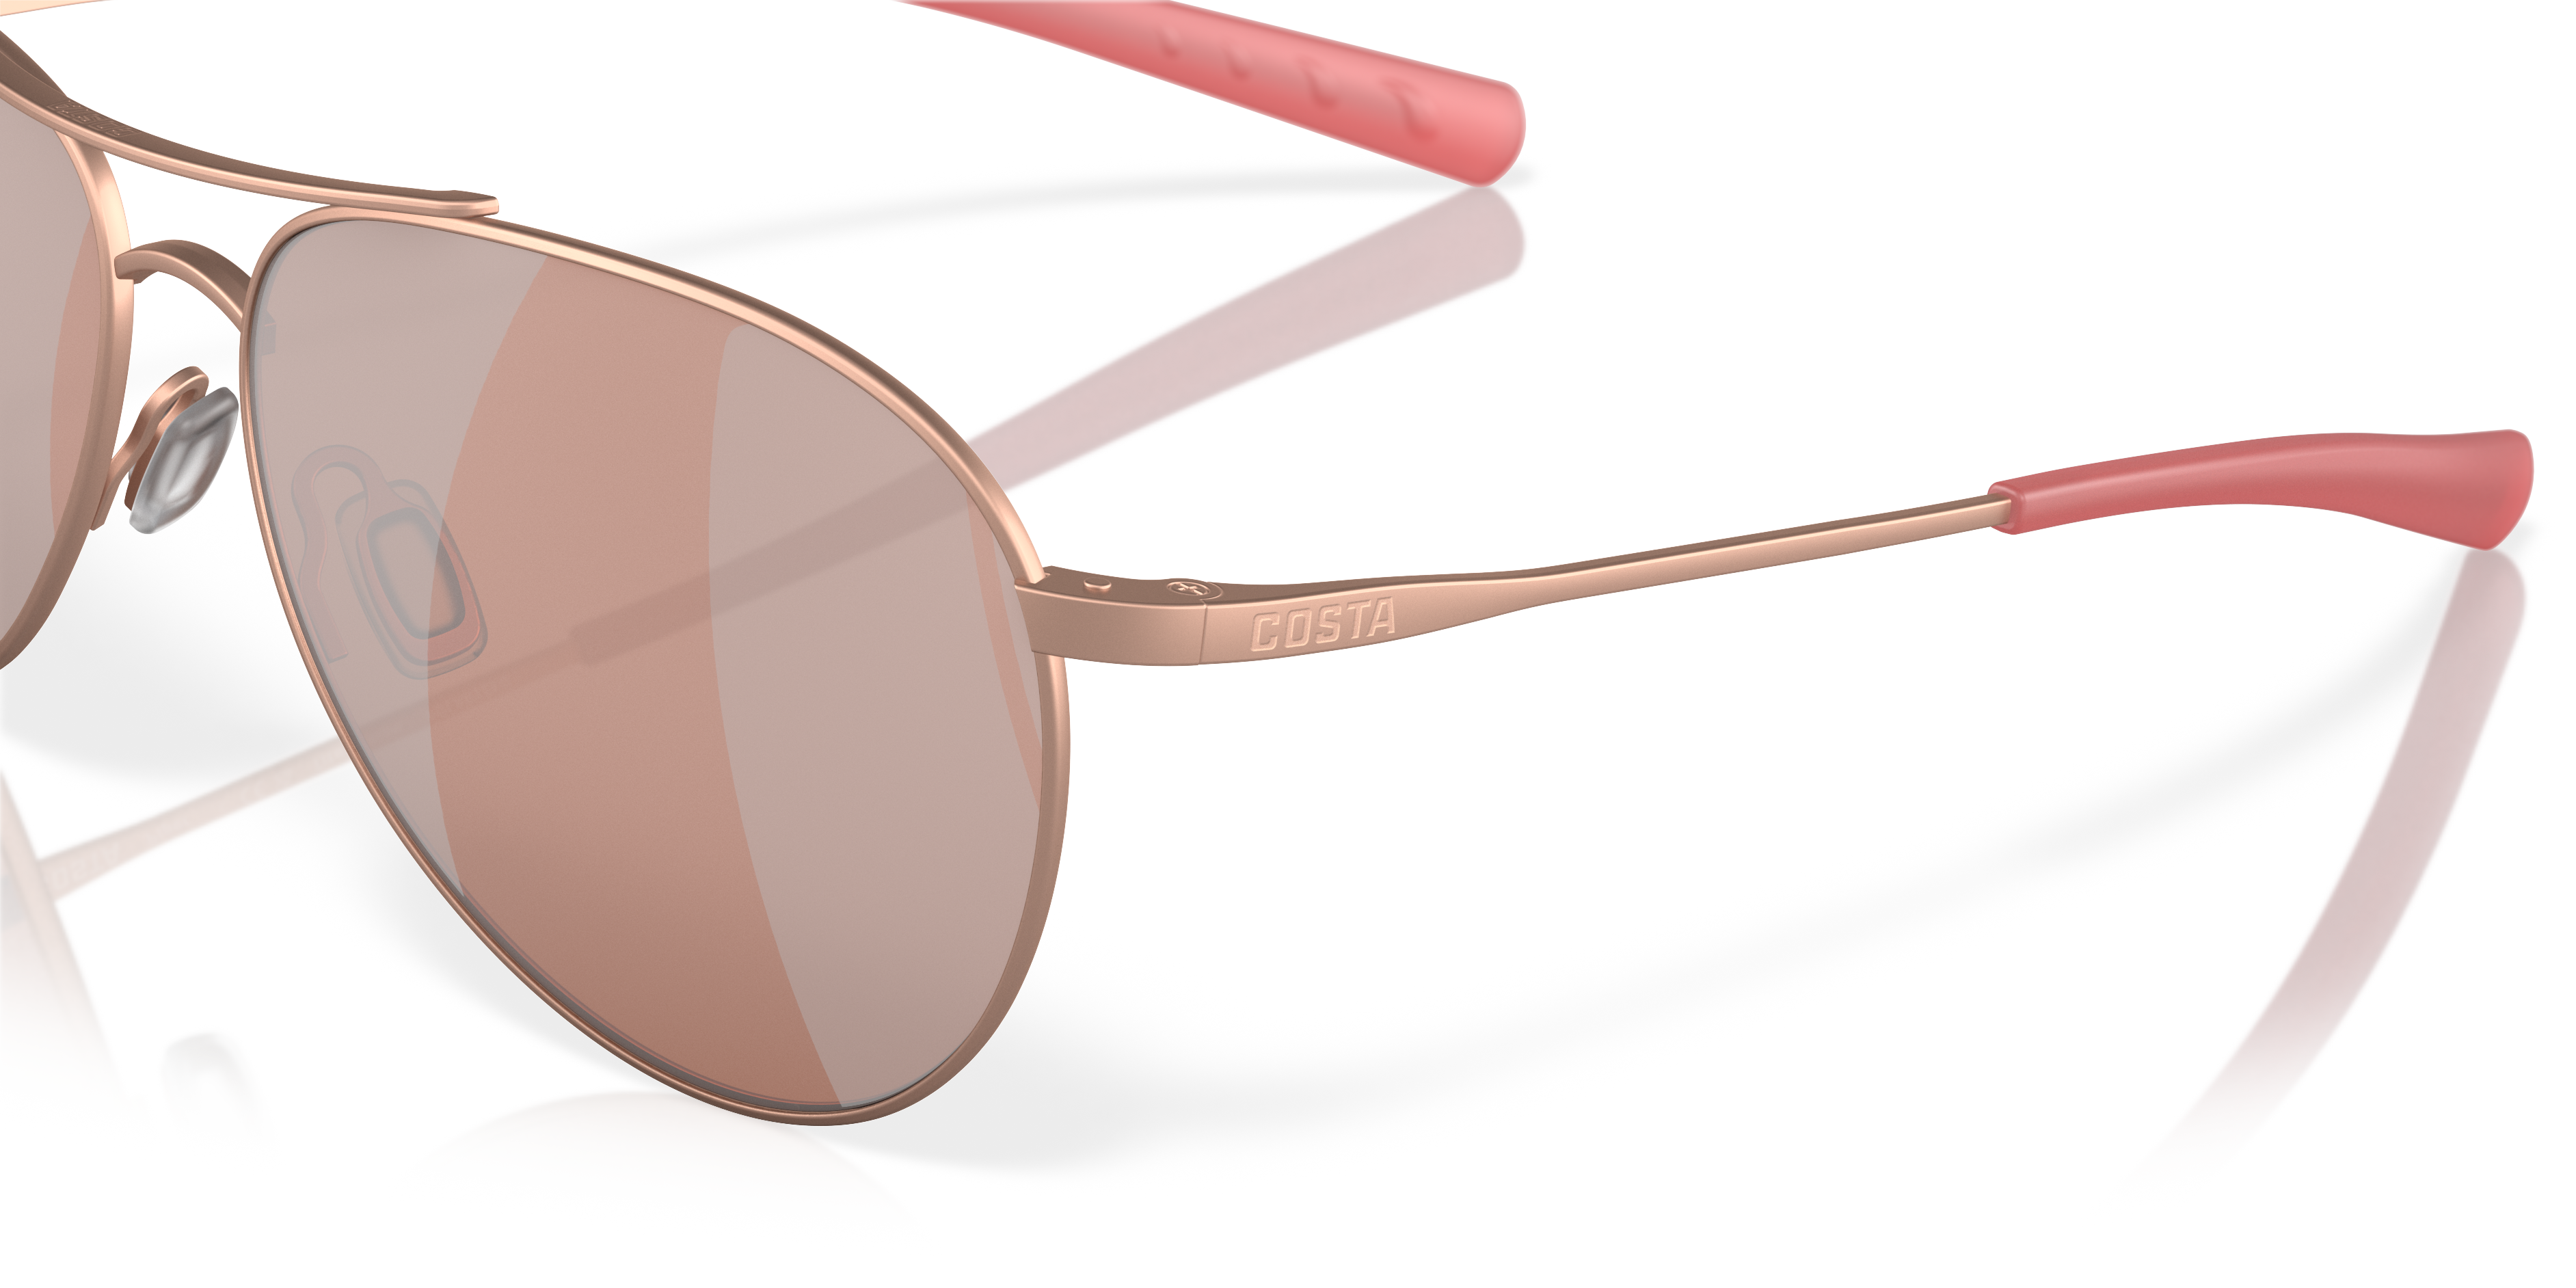 Piper Polarized Sunglasses in Copper Silver Mirror | Costa Del Mar®